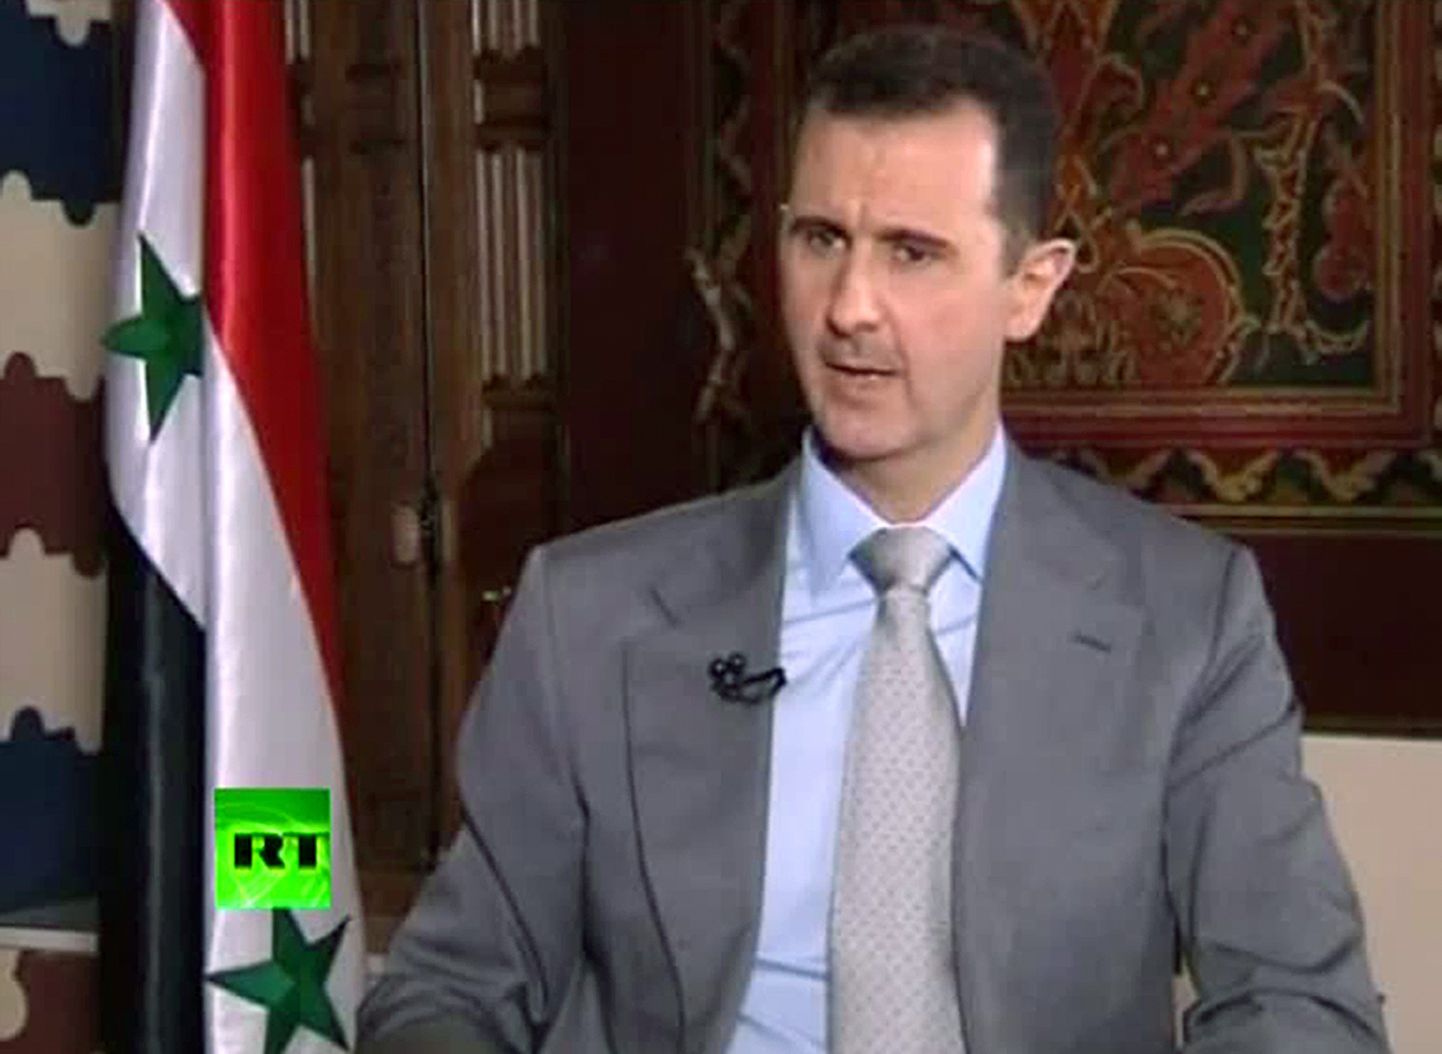 Süüria president Bashar al-Assad anab intervjuud telekanalile Russia Today (RT).